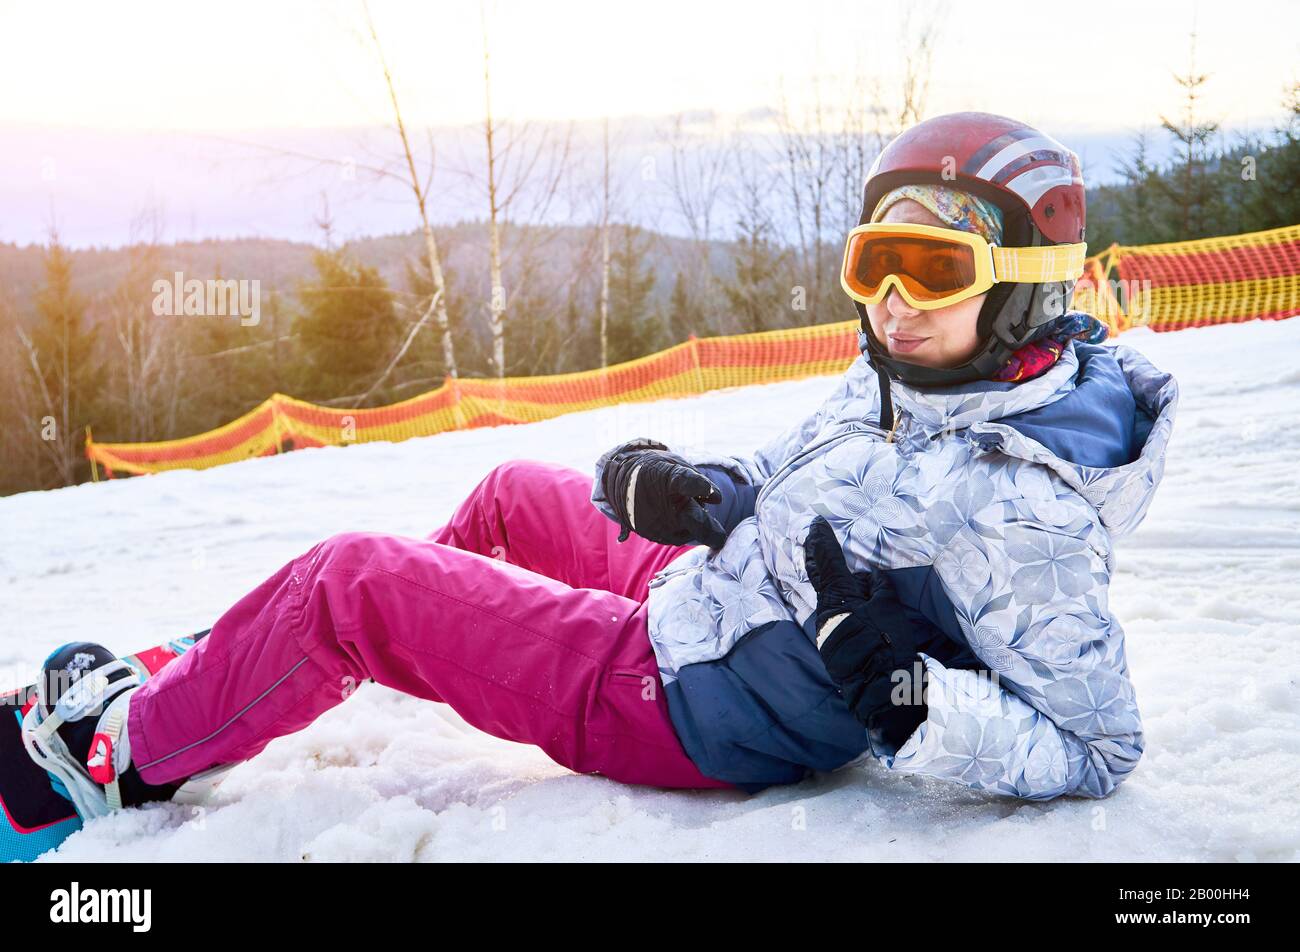 Primer plano de una niña tumbada en la nieve en la estación de esquí,  mirando la cámara, usando equipo de esquí, casco, gafas, guantes y  snowboard, vista lateral Fotografía de stock 